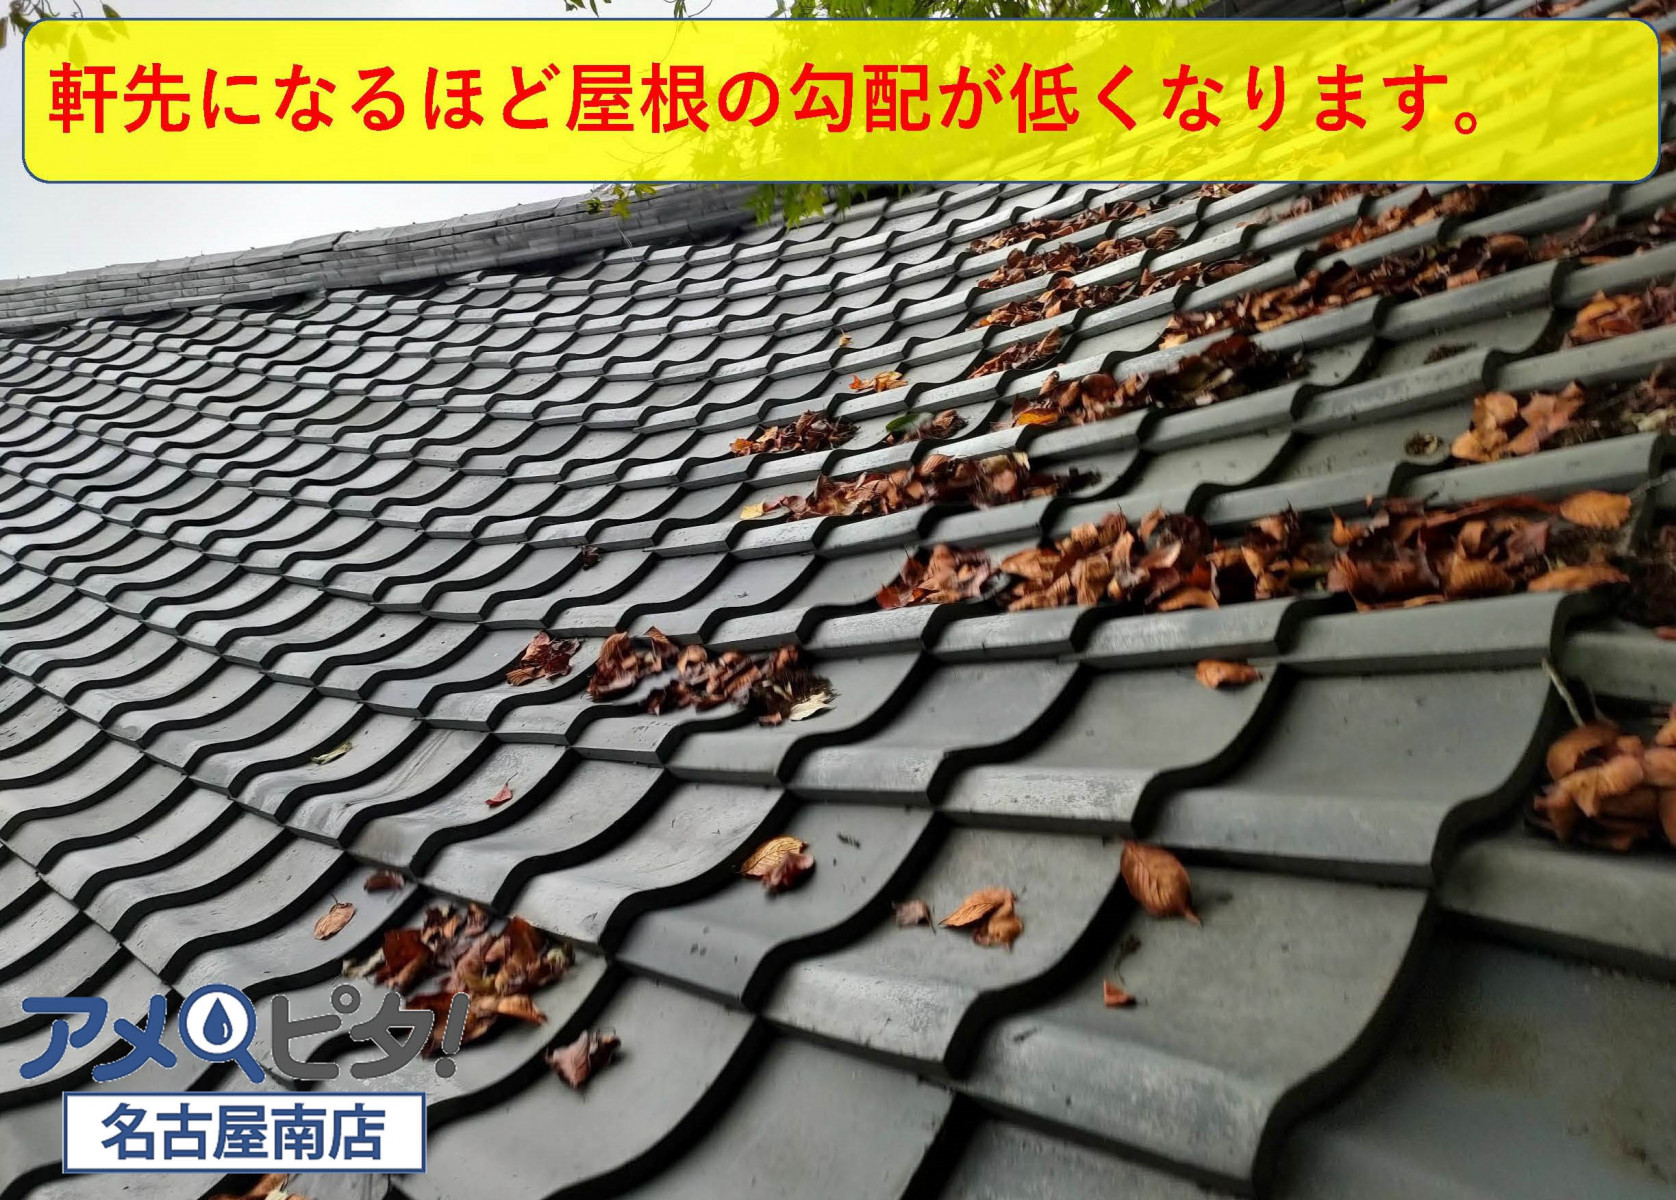 軒先の屋根の勾配が低いため落ち葉が溜まりやすいです